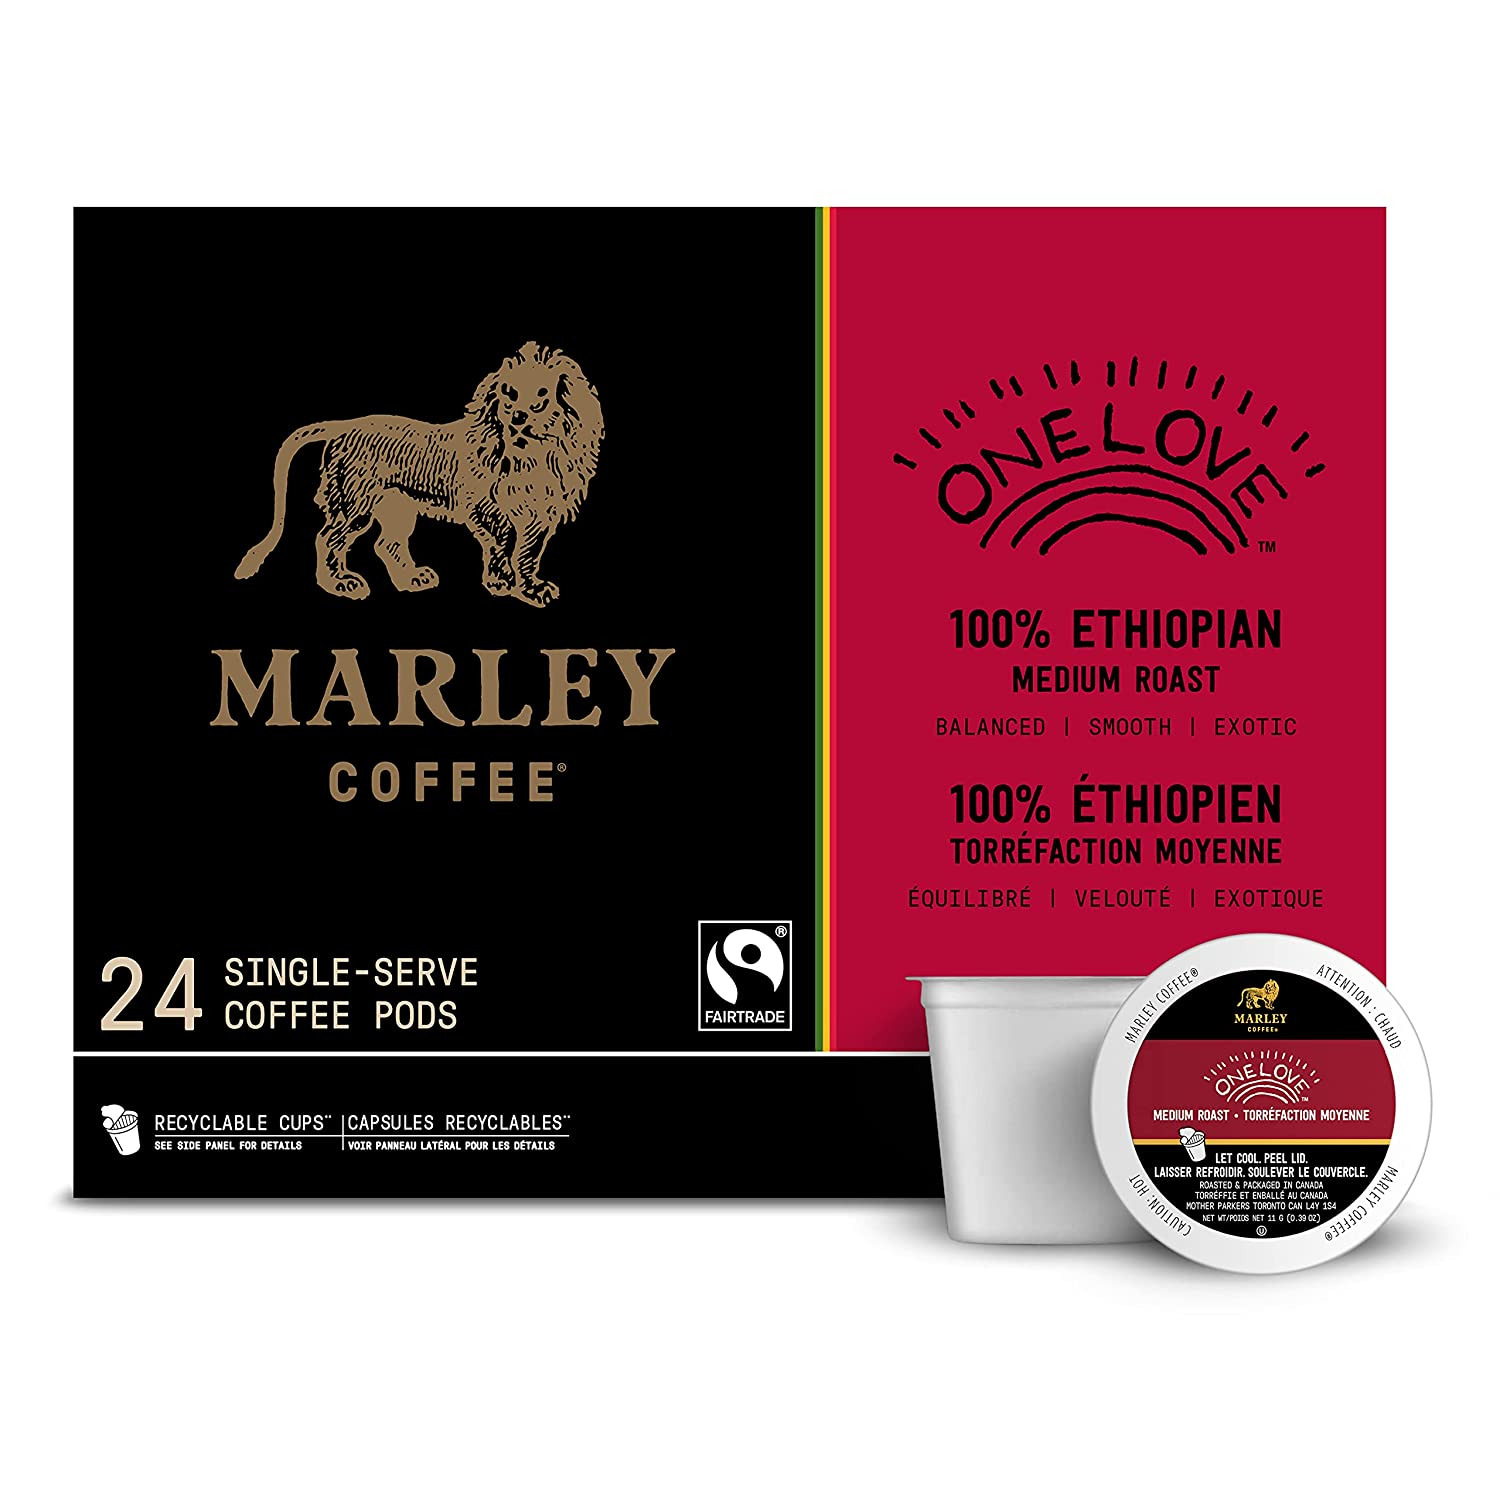 Marley Coffee One Love, 100% Ethiopian, Medium Roast Coffee, Keurig K-Cup Brewer